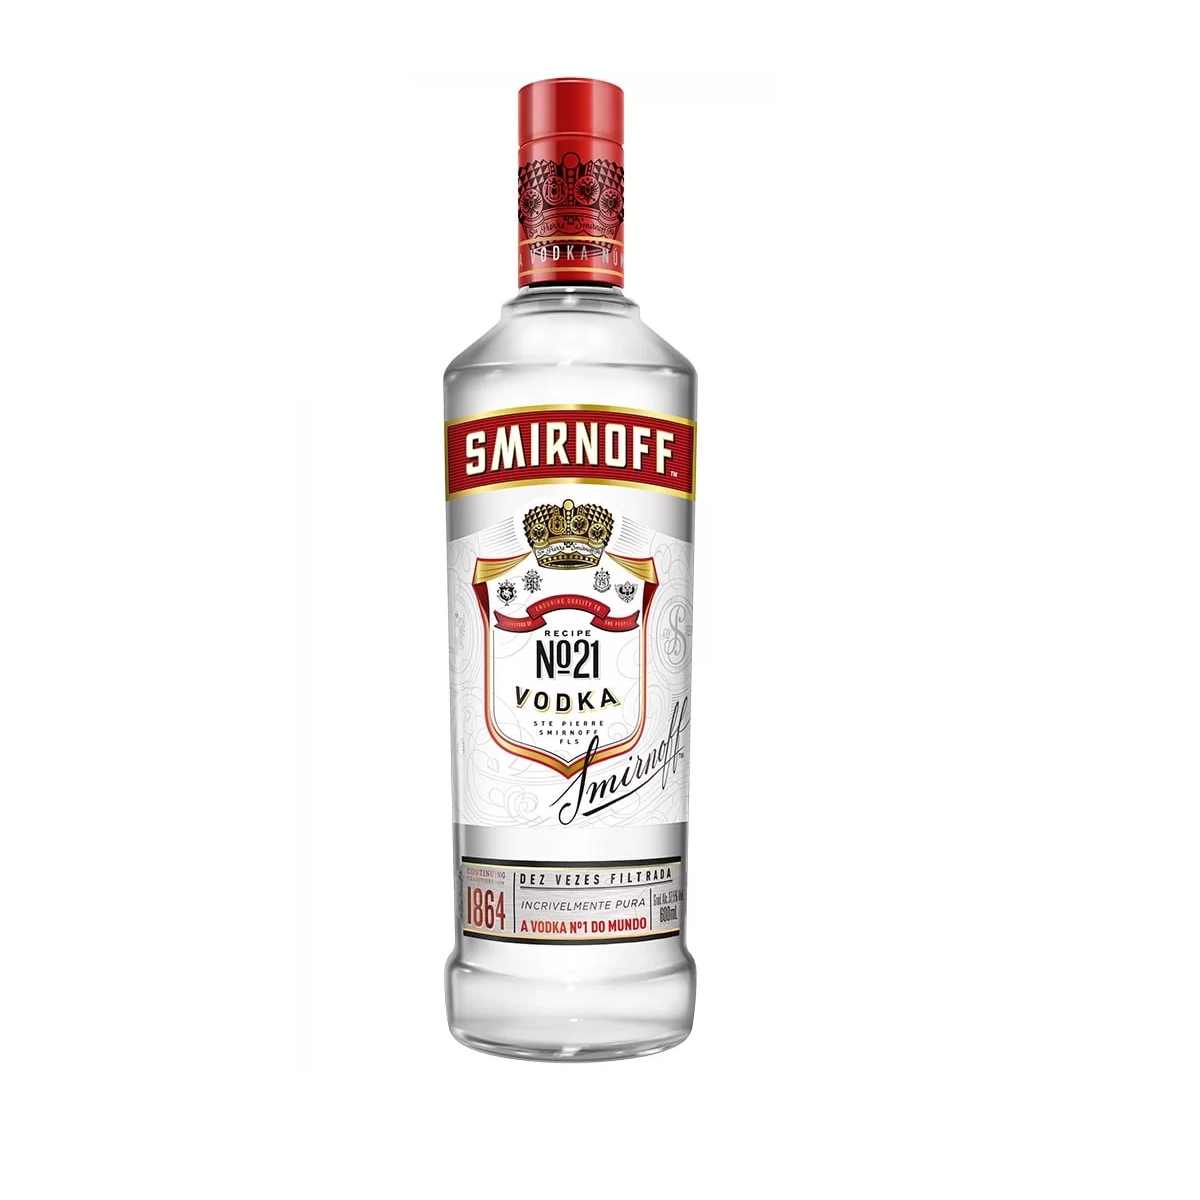 Smirnoff 600ml vodka